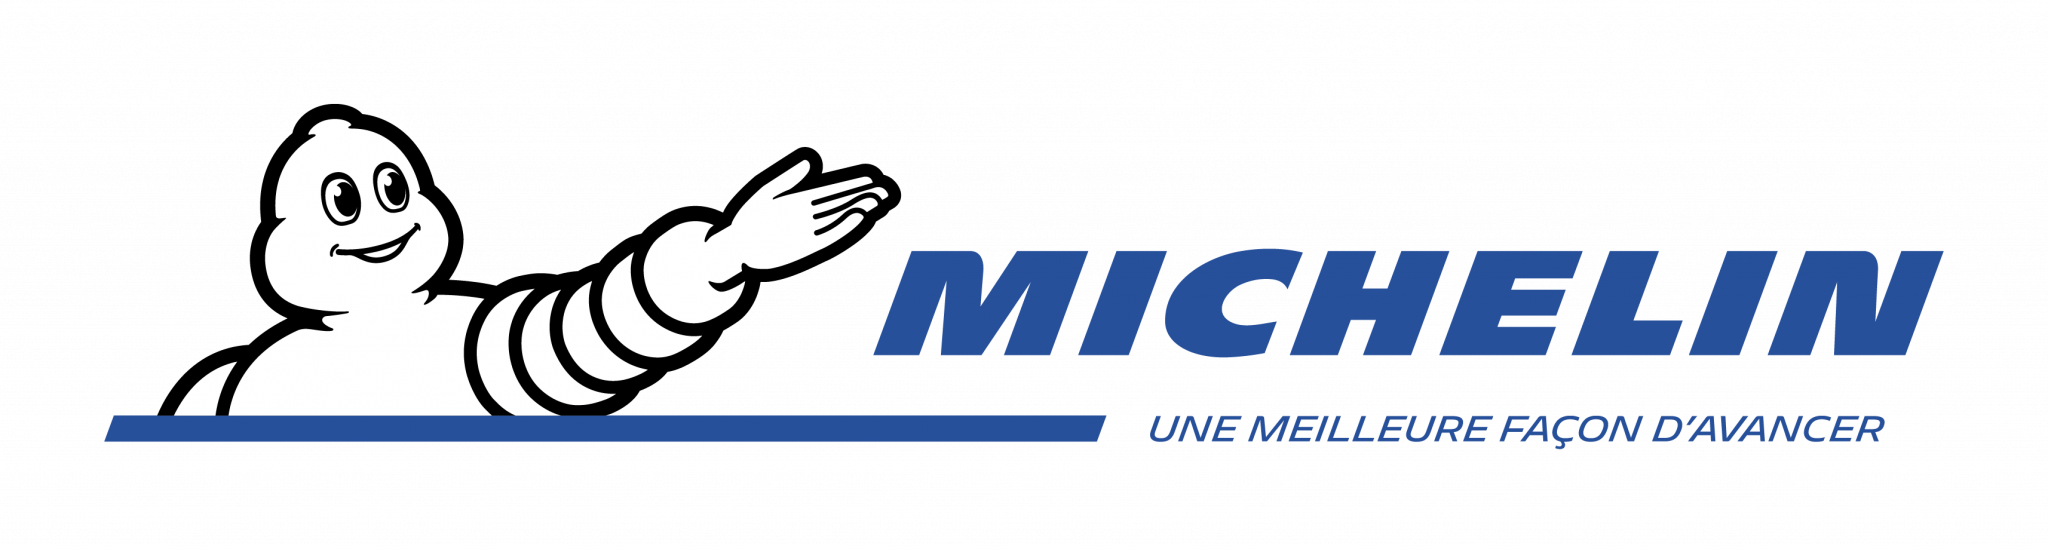 Michelin_G_H_Fr_WhiteBG_RGB_0618